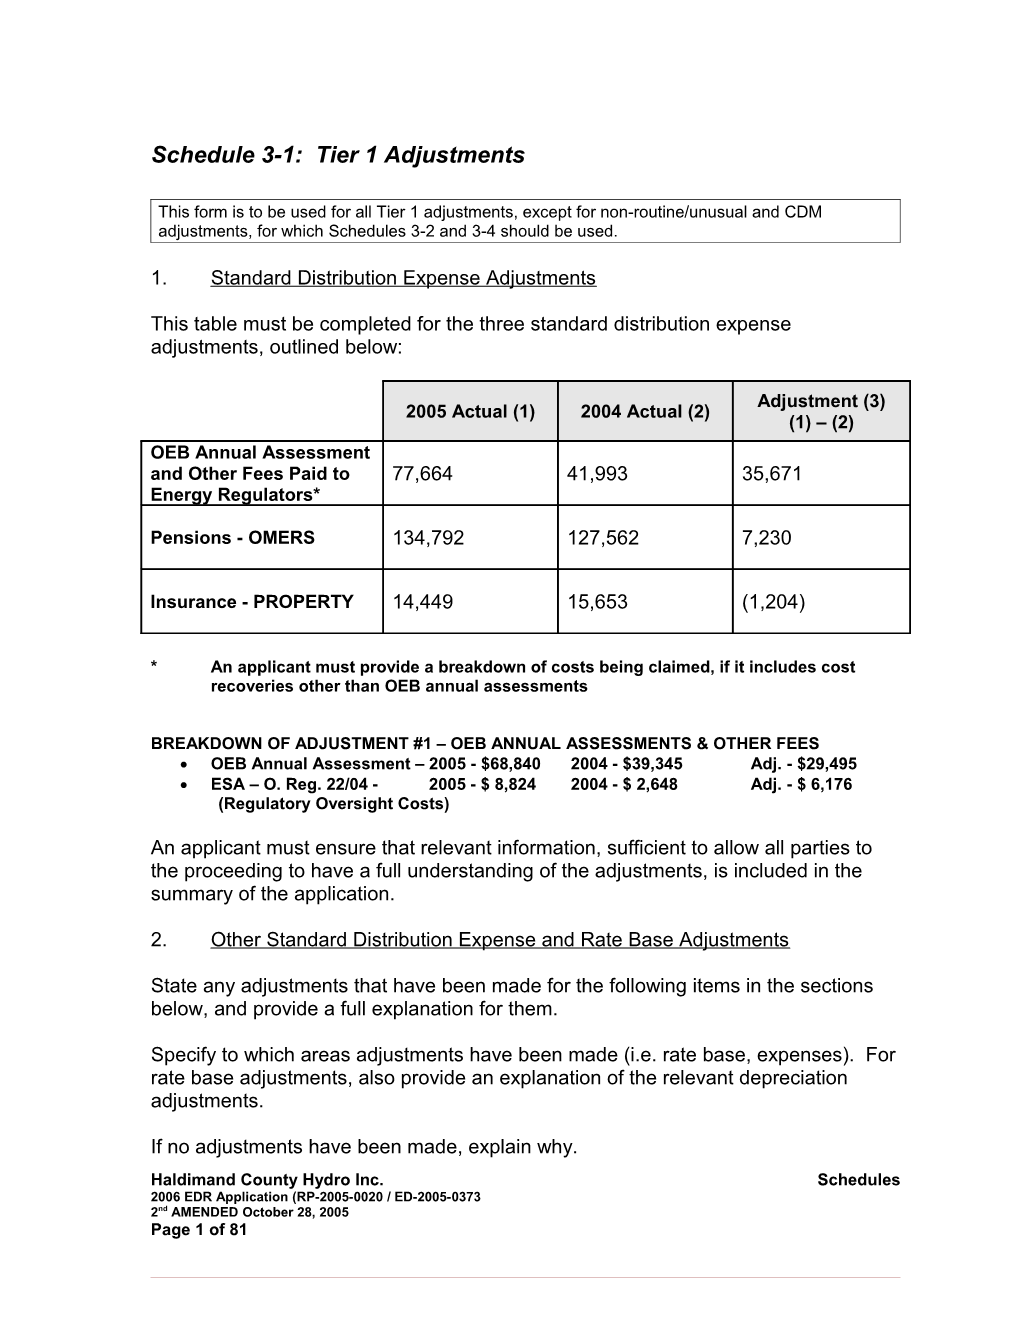 1. Standard Distribution Expense Adjustments